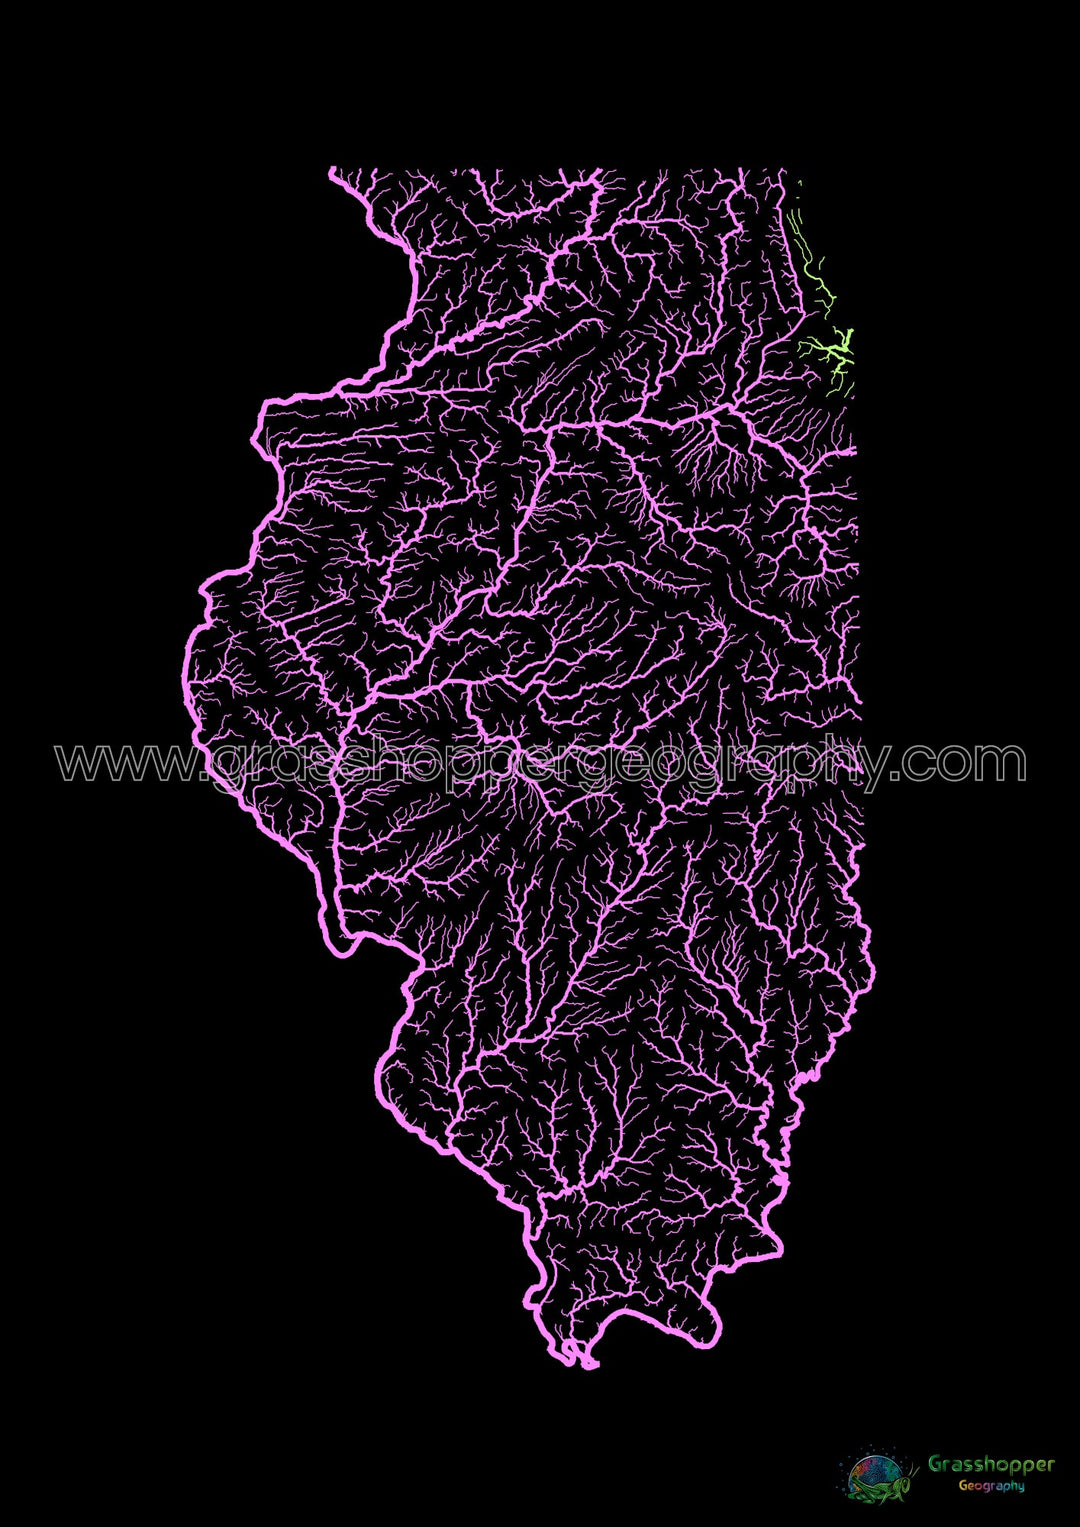 Illinois - Carte du bassin fluvial, pastel sur noir - Fine Art Print